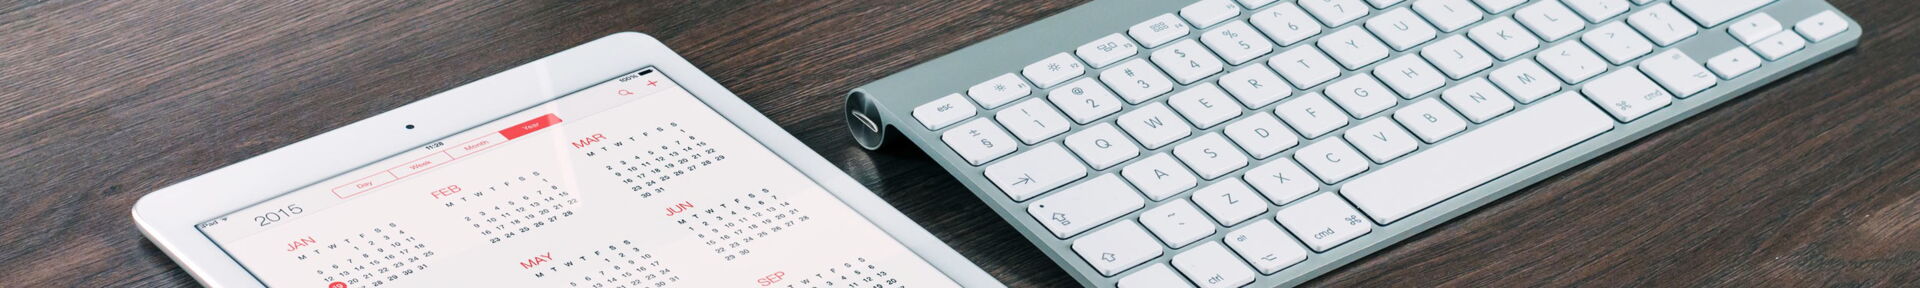 Foto Tastatur und Tablet